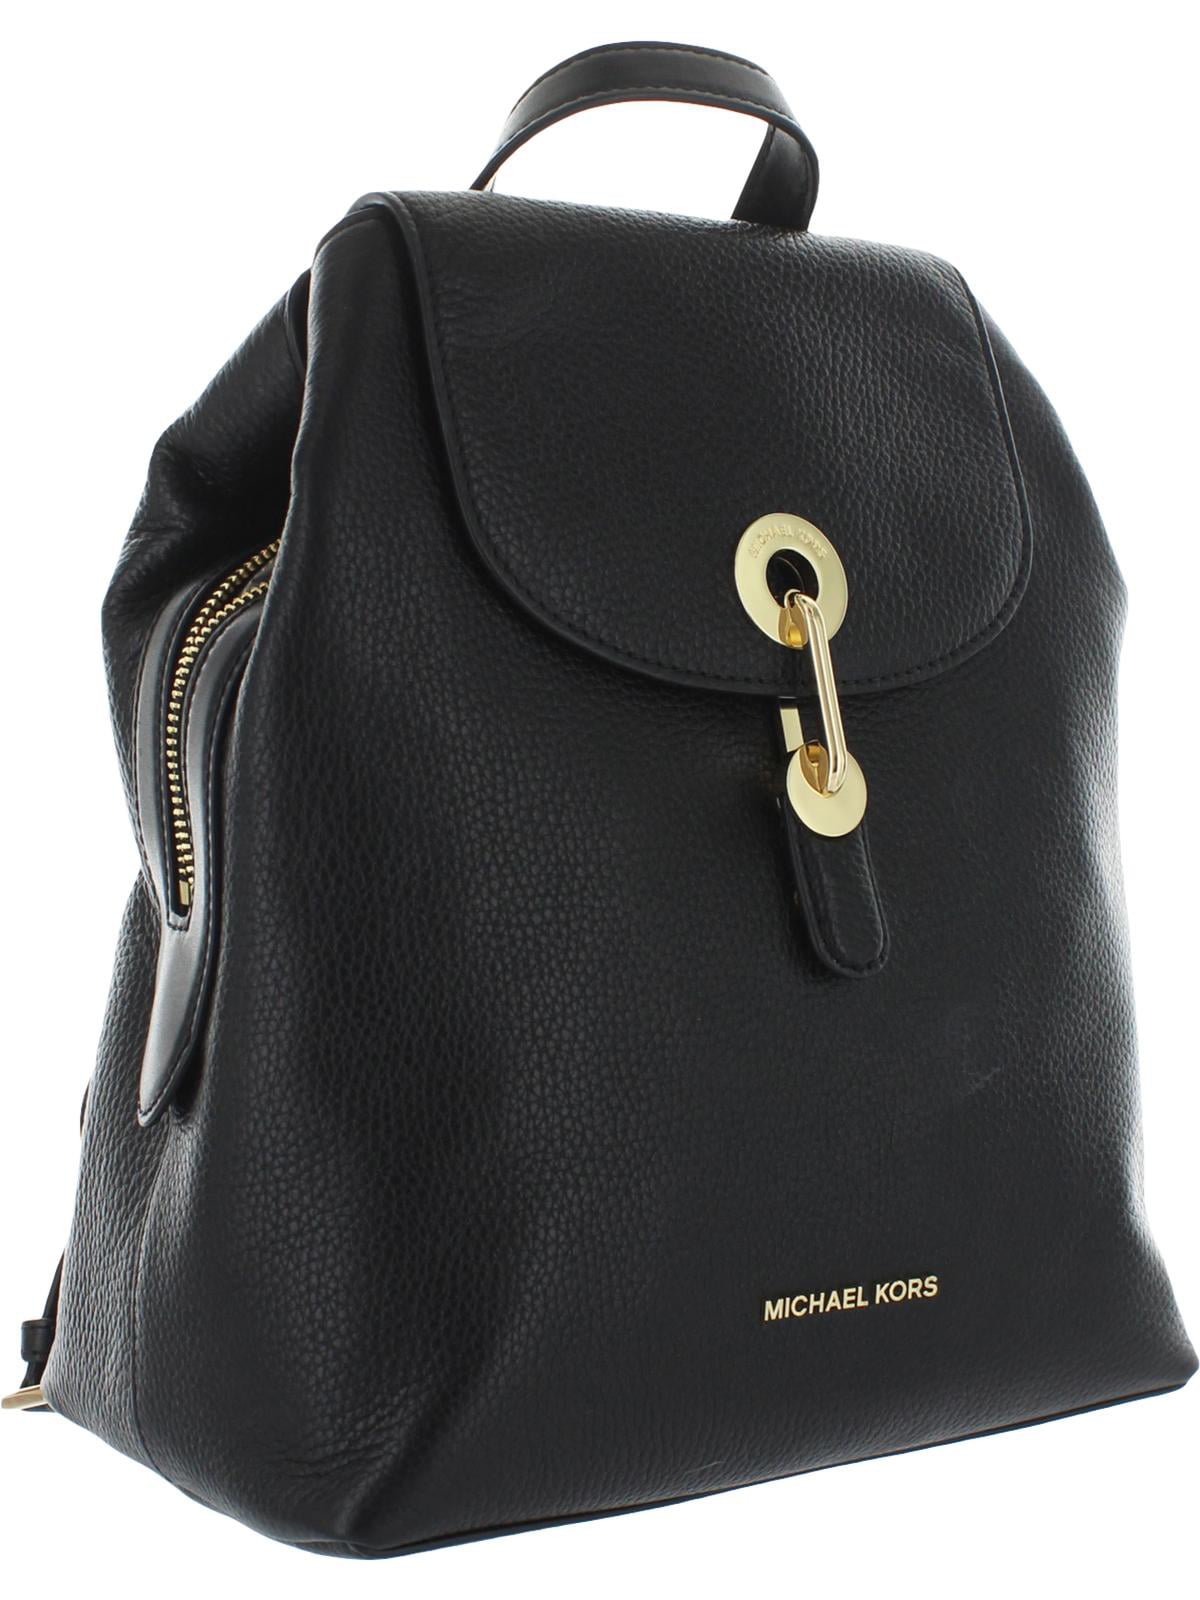 Michael Kors Raven Medium Black White Leather Backpack  Bluefly